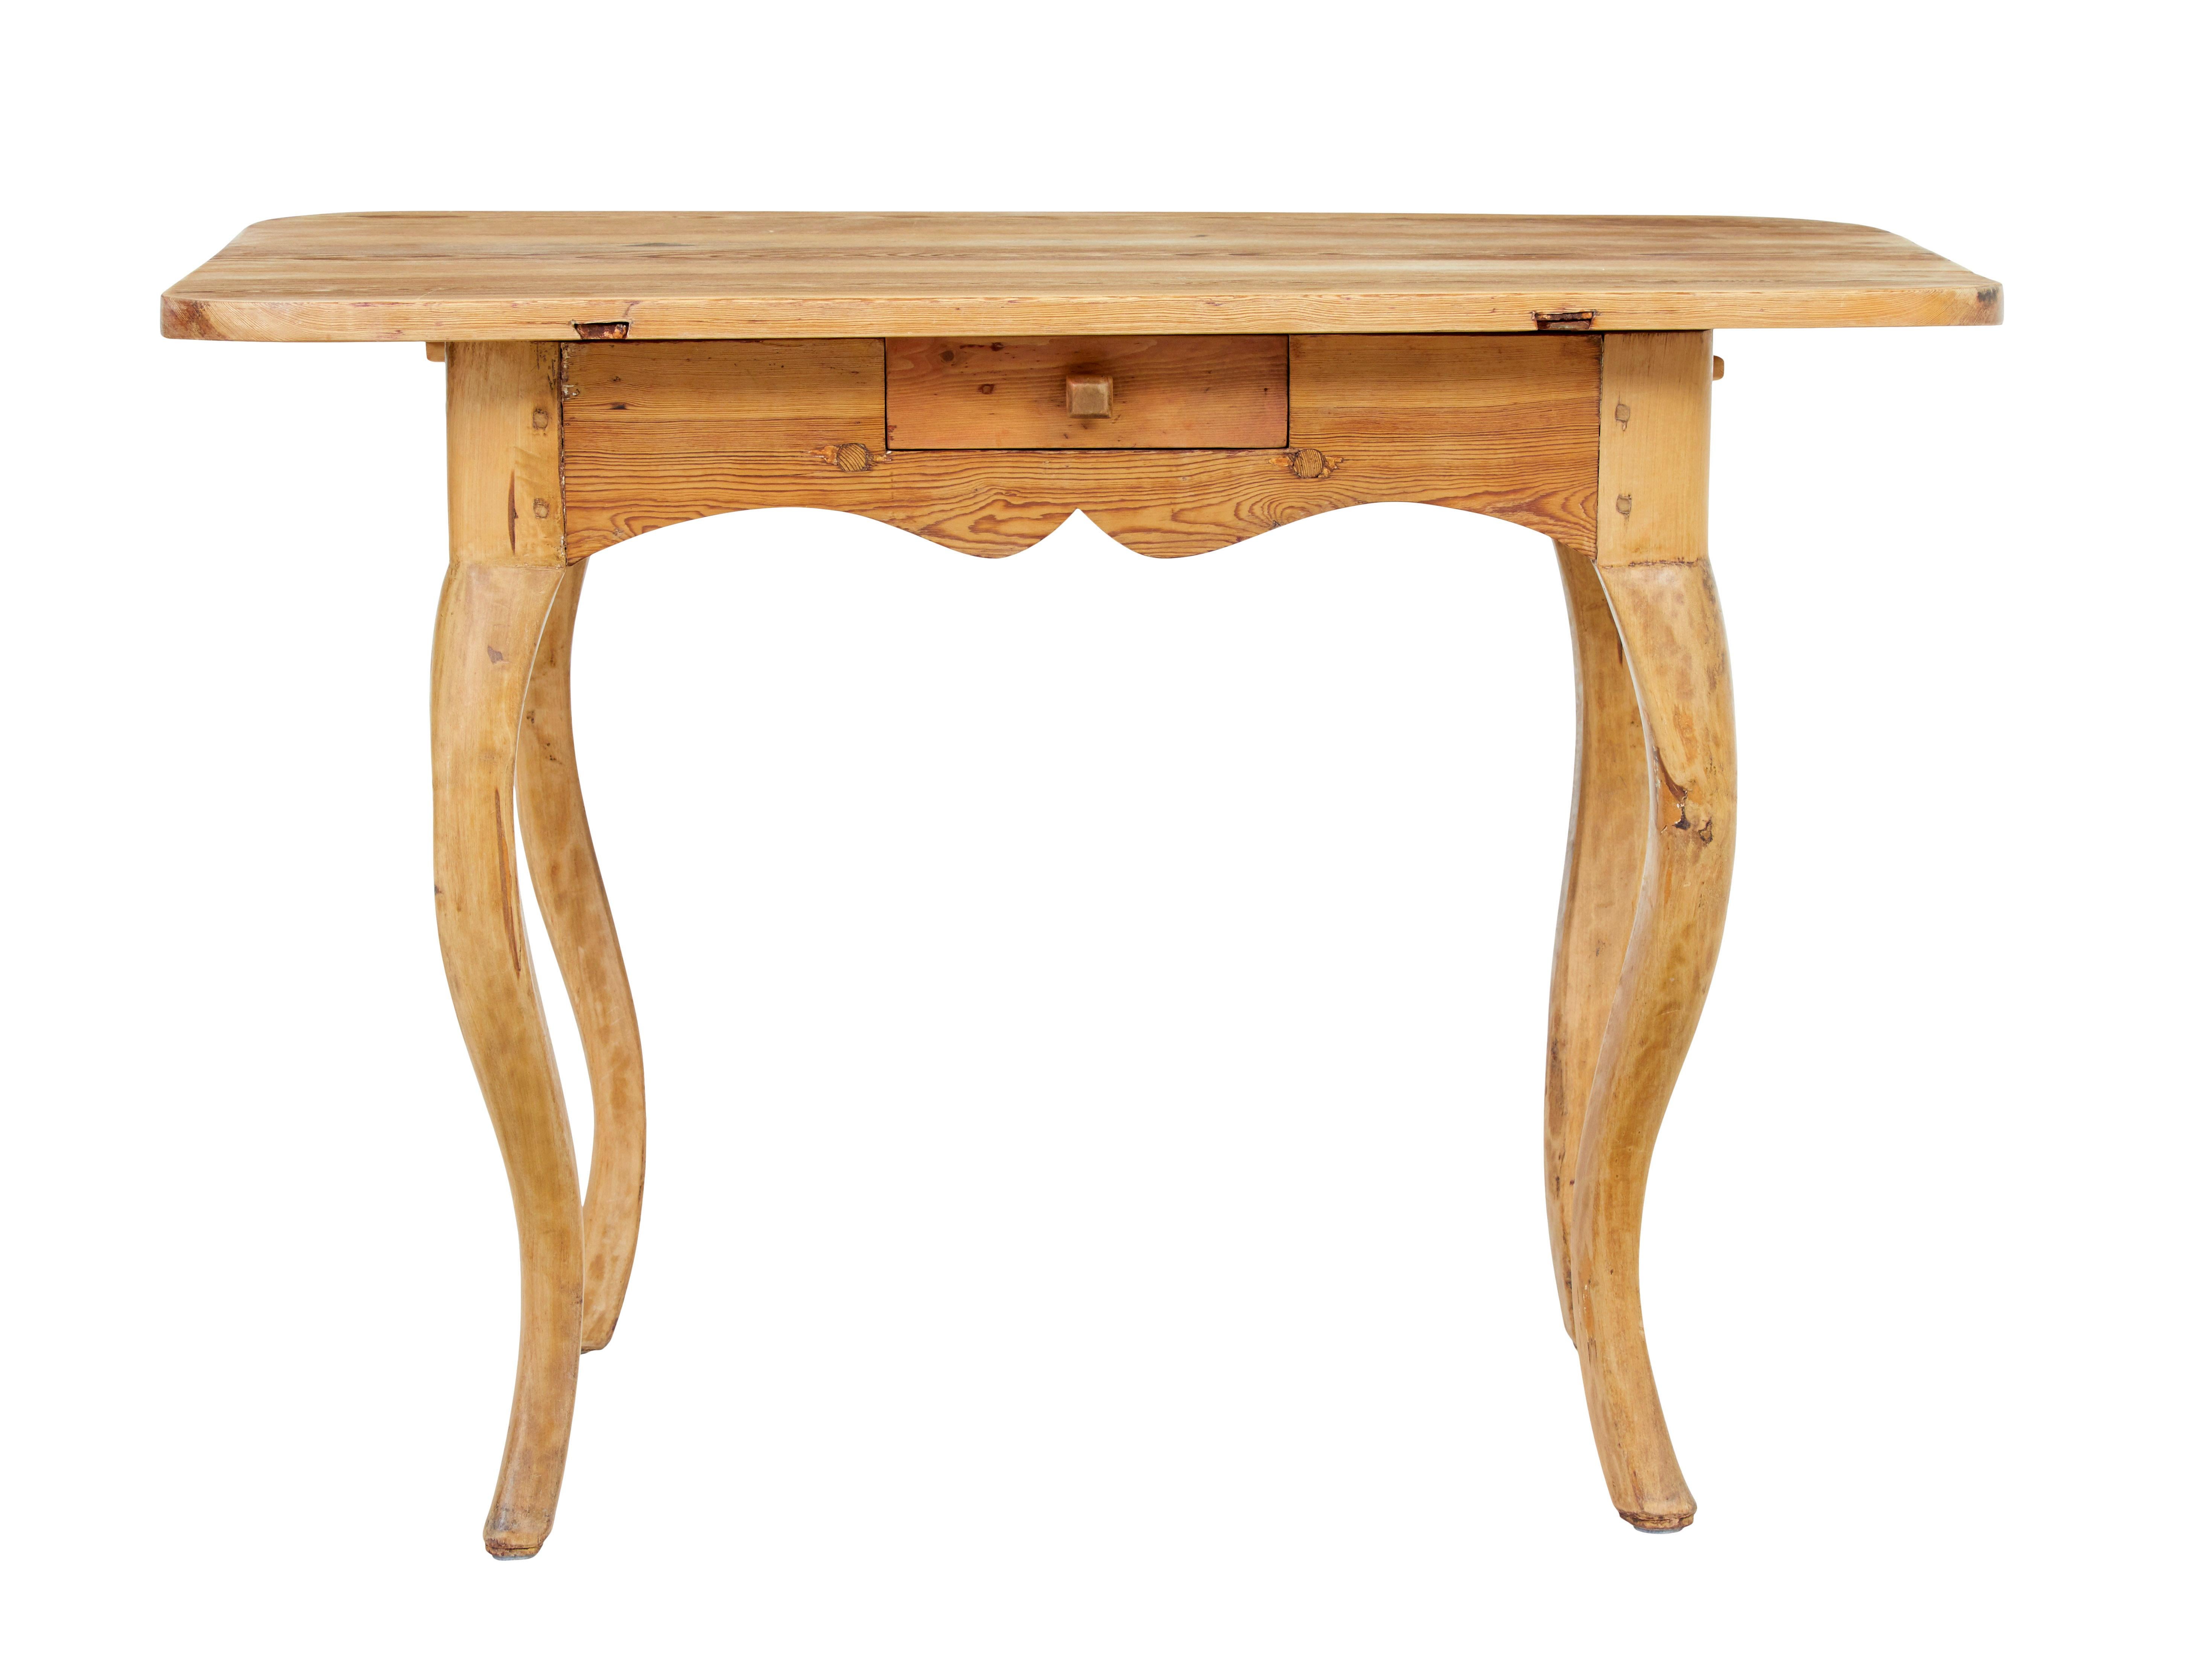 Schwedischer Beistelltisch im Rokoko-Stil aus dem 19. Jahrhundert, um 1840.

Praktischer Tisch, der in der Wohnung vielseitig einsetzbar ist, z. B. als Beistell- oder Flurtisch.

Nackte Kieferplatte mit abgerundeten Ecken, die durch ein Paar Zapfen